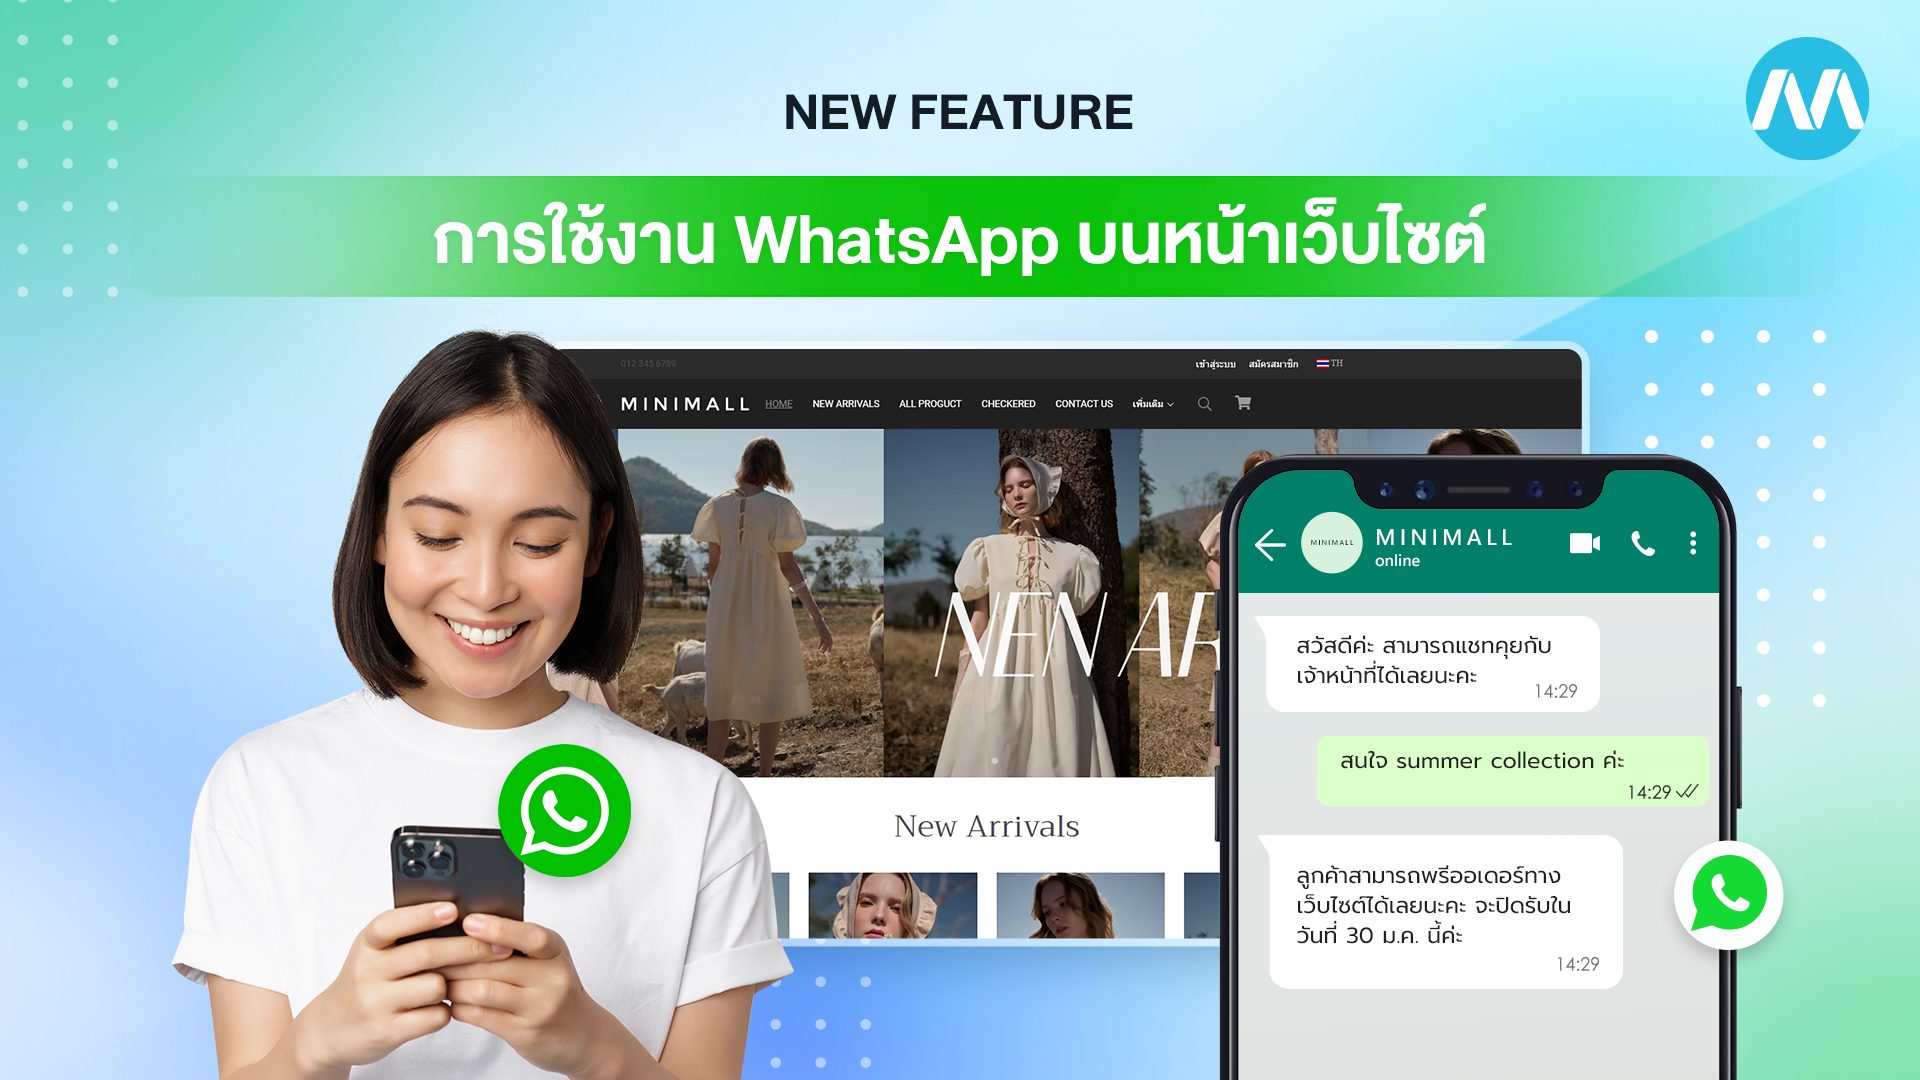 New Feature : การใช้งาน WhatsApp บนหน้าเว็บไซต์